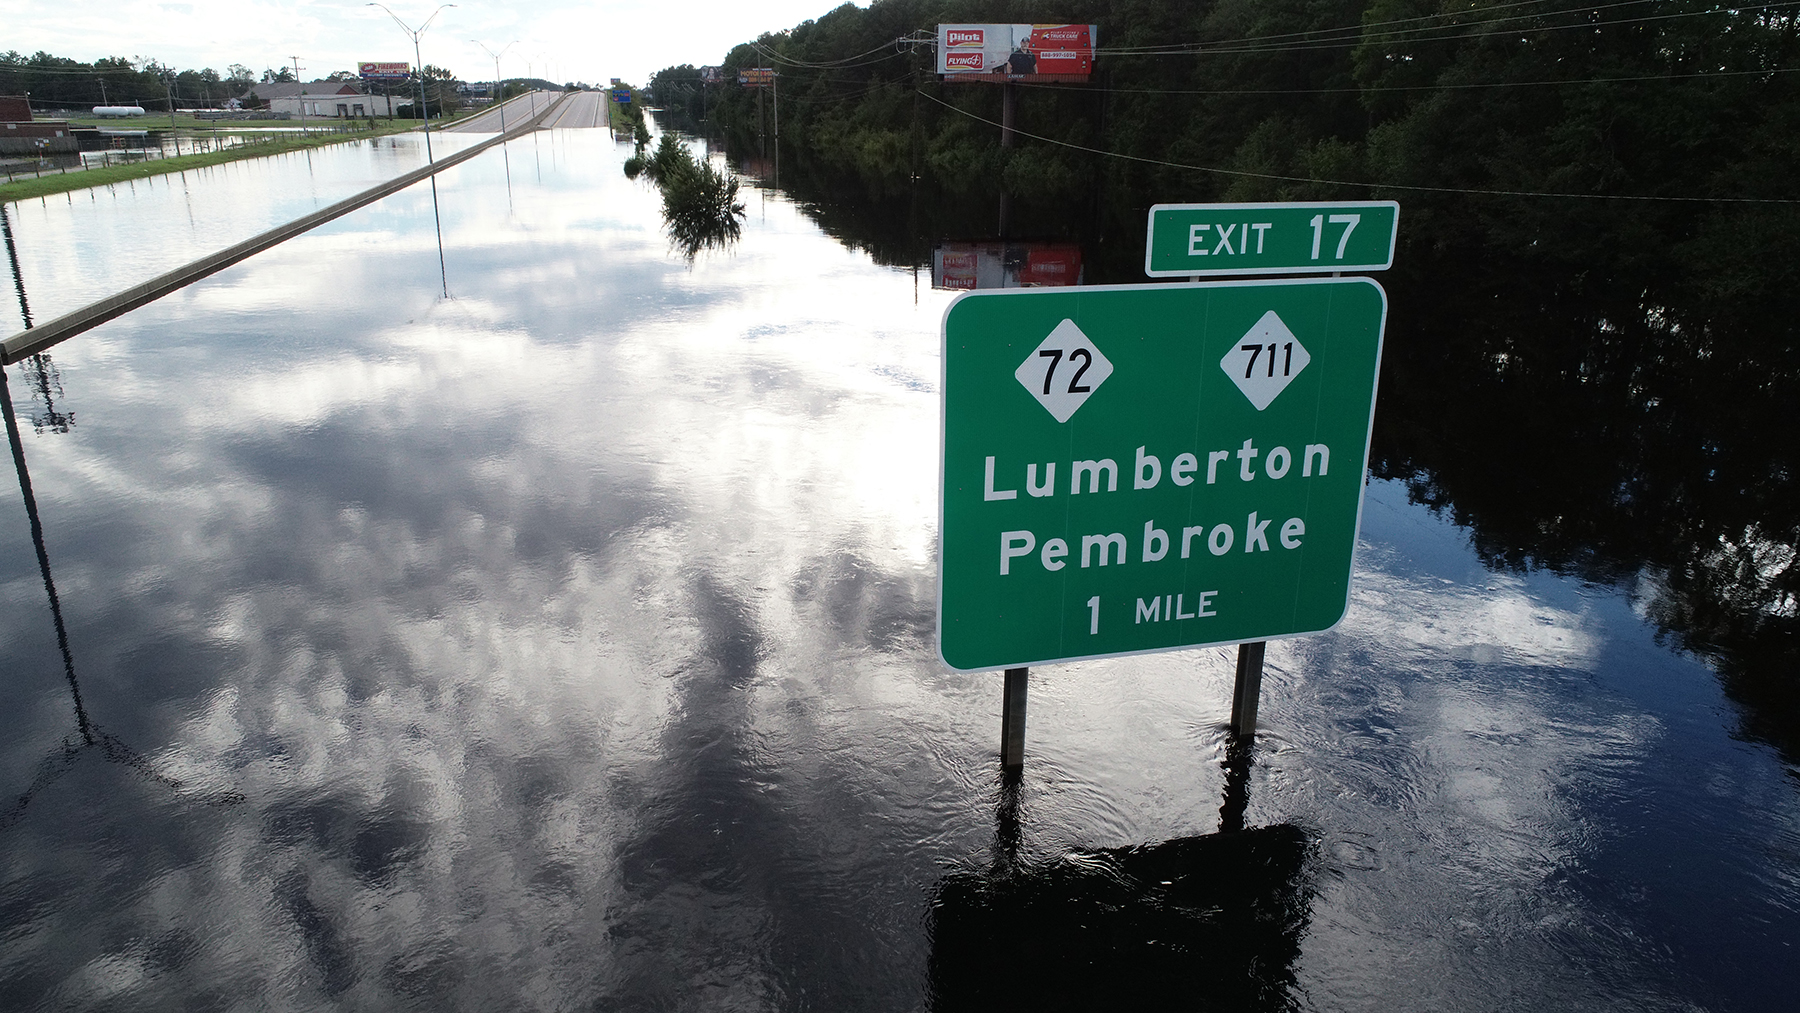 North Carolina tests flood-warning system for roads, bridges